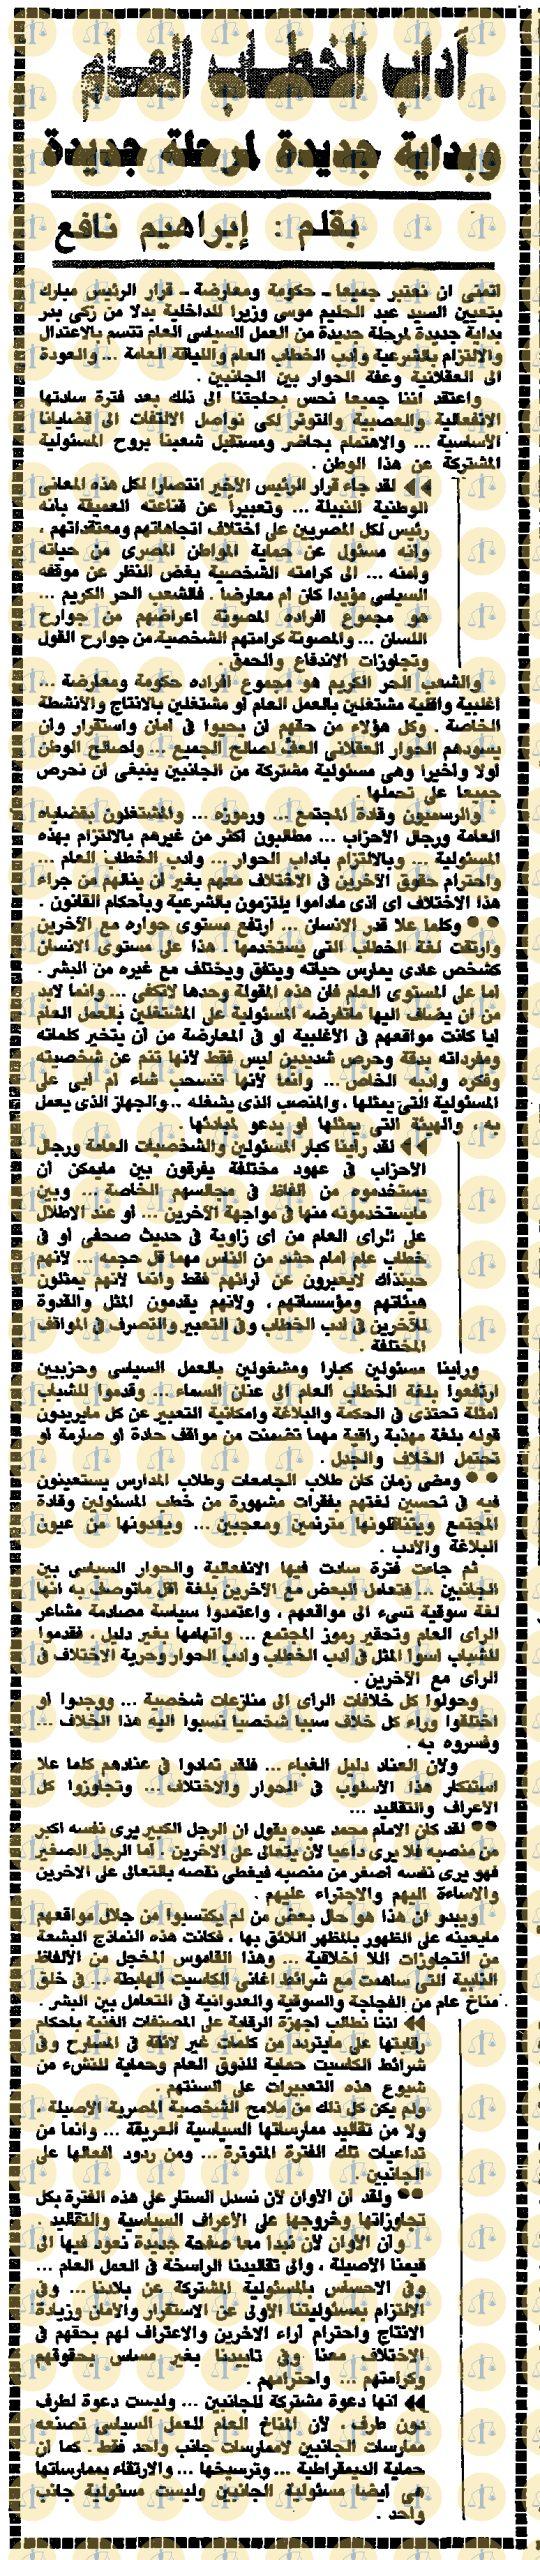 مقال إبراهيم نافع، جريدة الأهرام، عدد 14 يناير 1990م، ص1